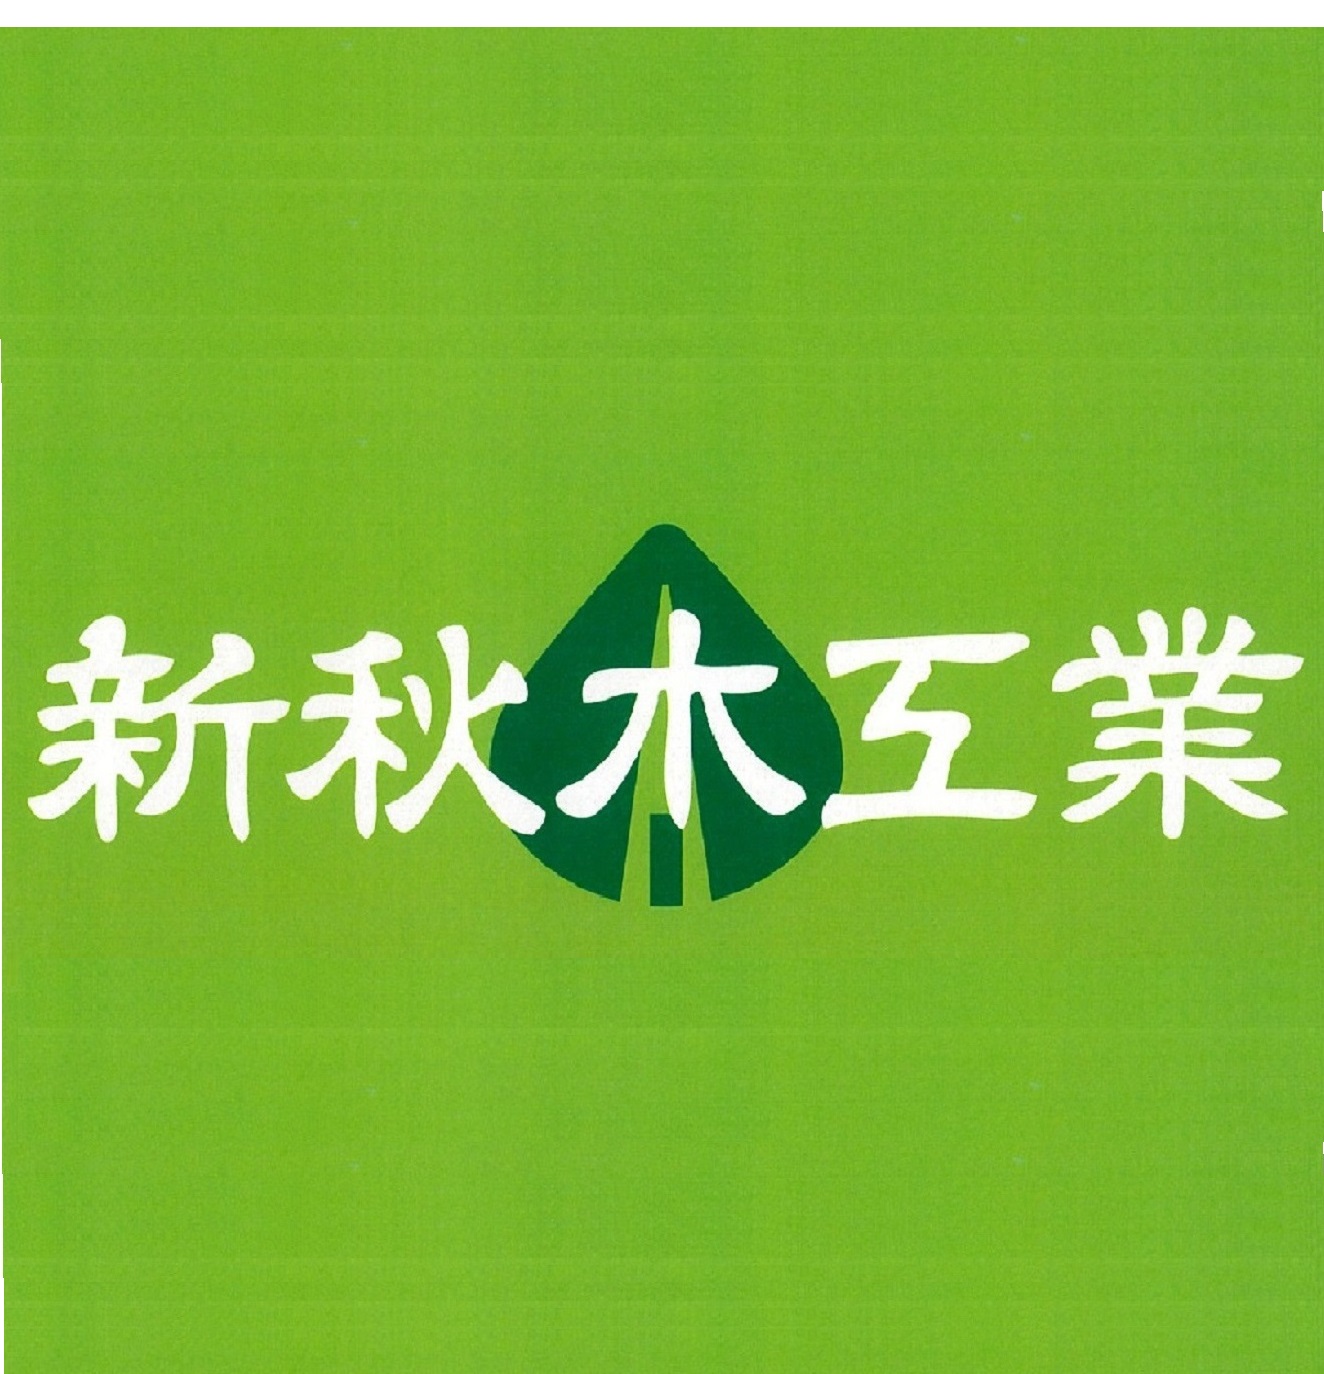 ロゴ:新秋木工業株式会社